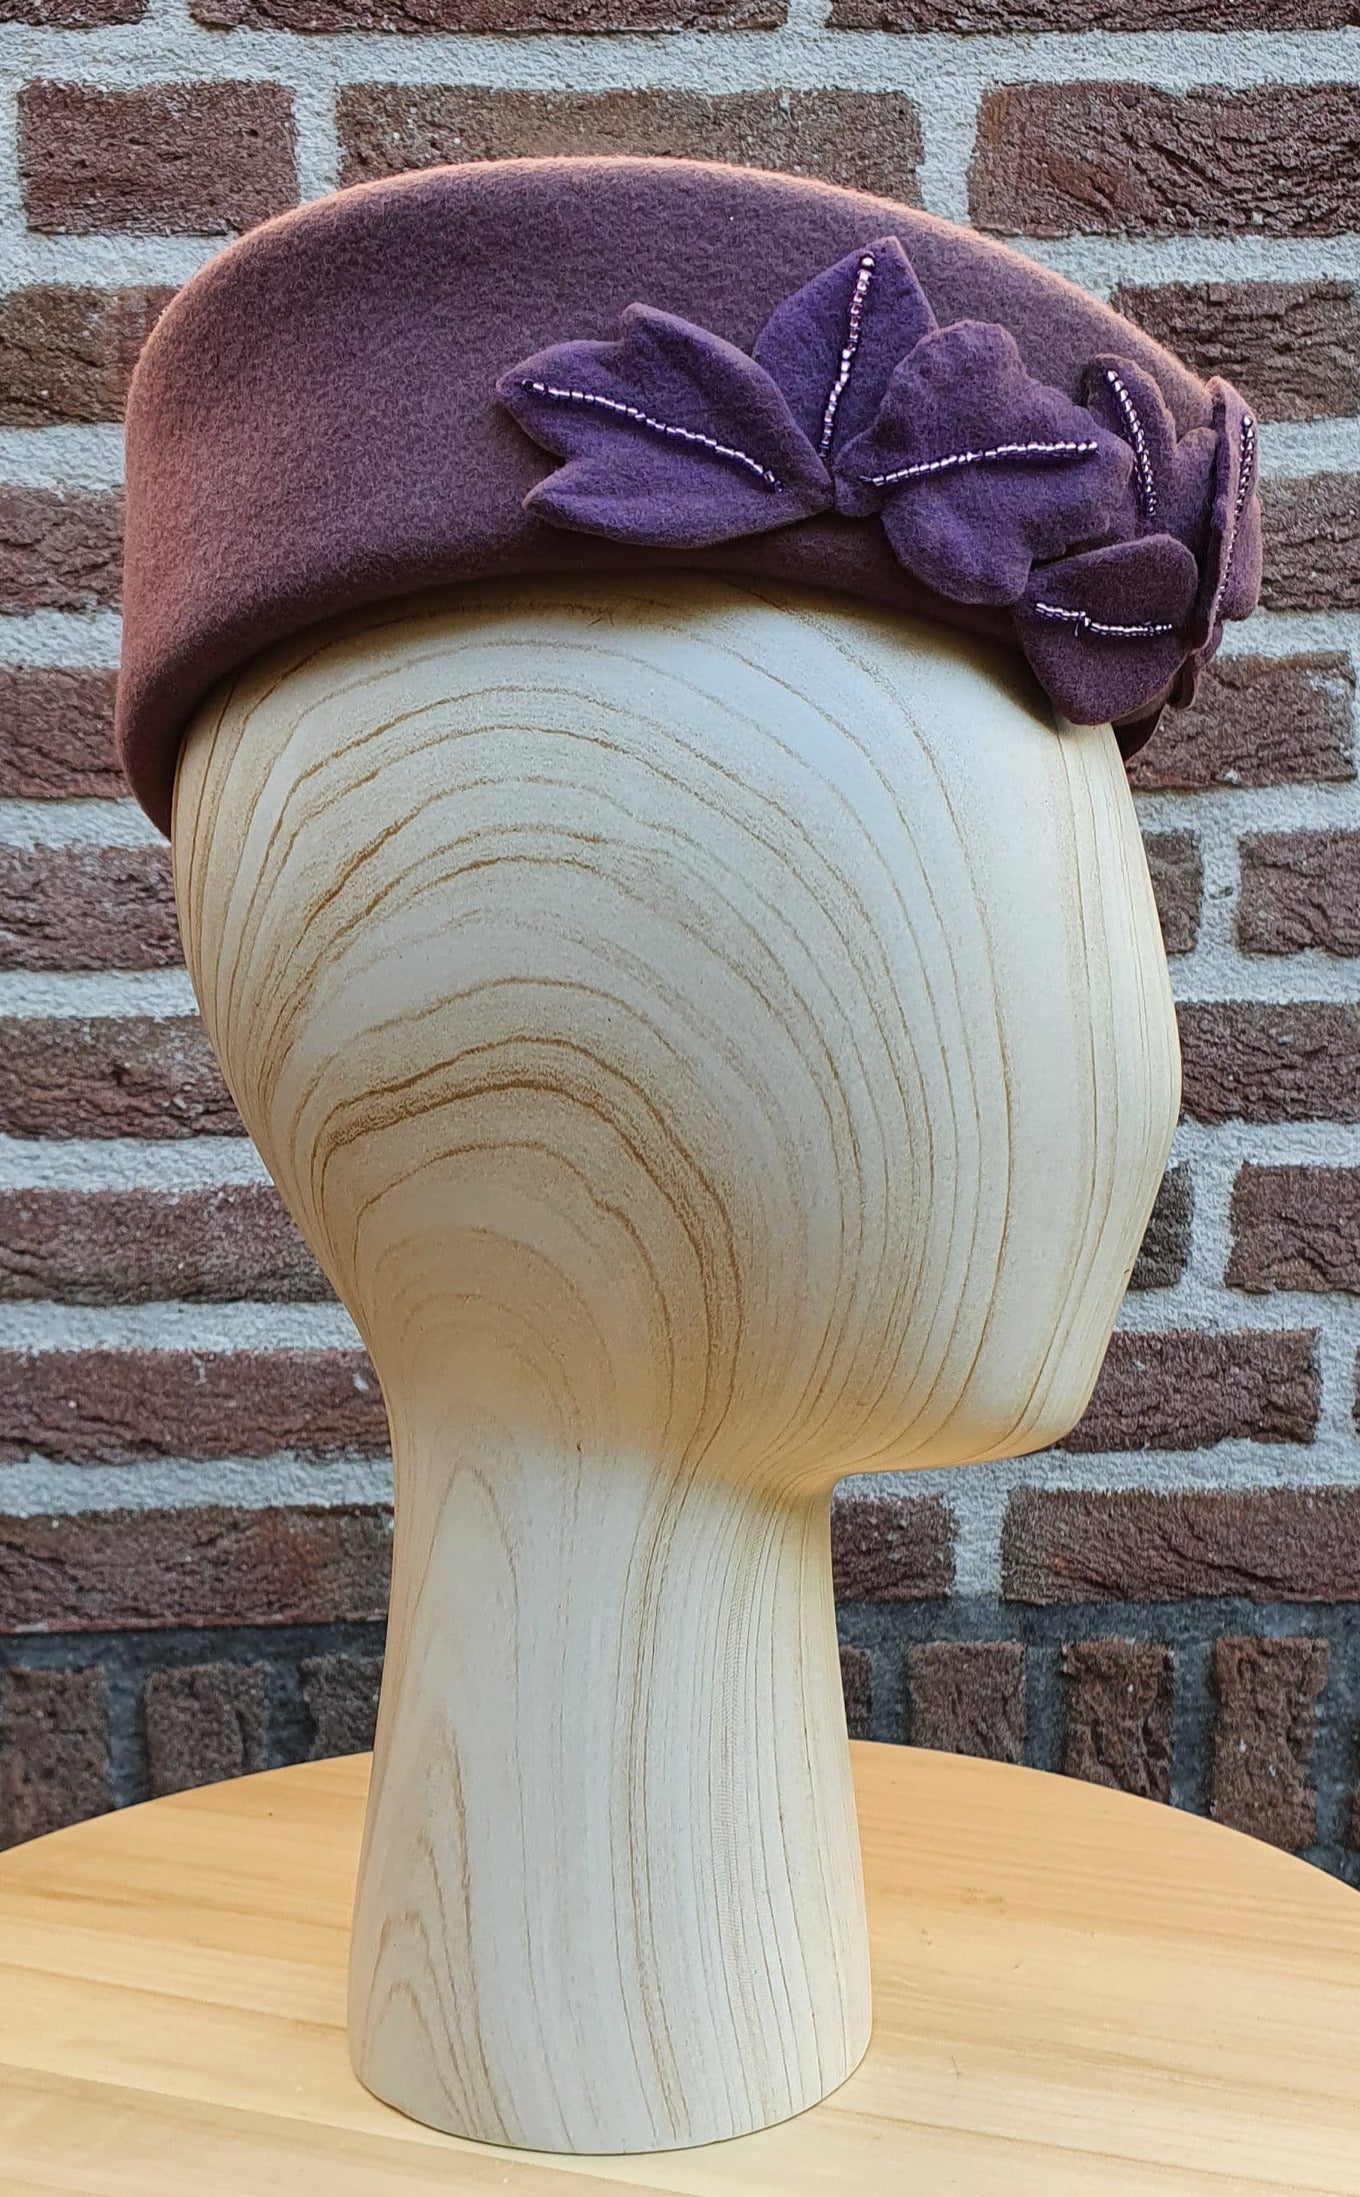 Elegante sombrero de fieltro para mujer - Pastillero morado con ala ancha y plana - Hecho a mano con organza y cuentas